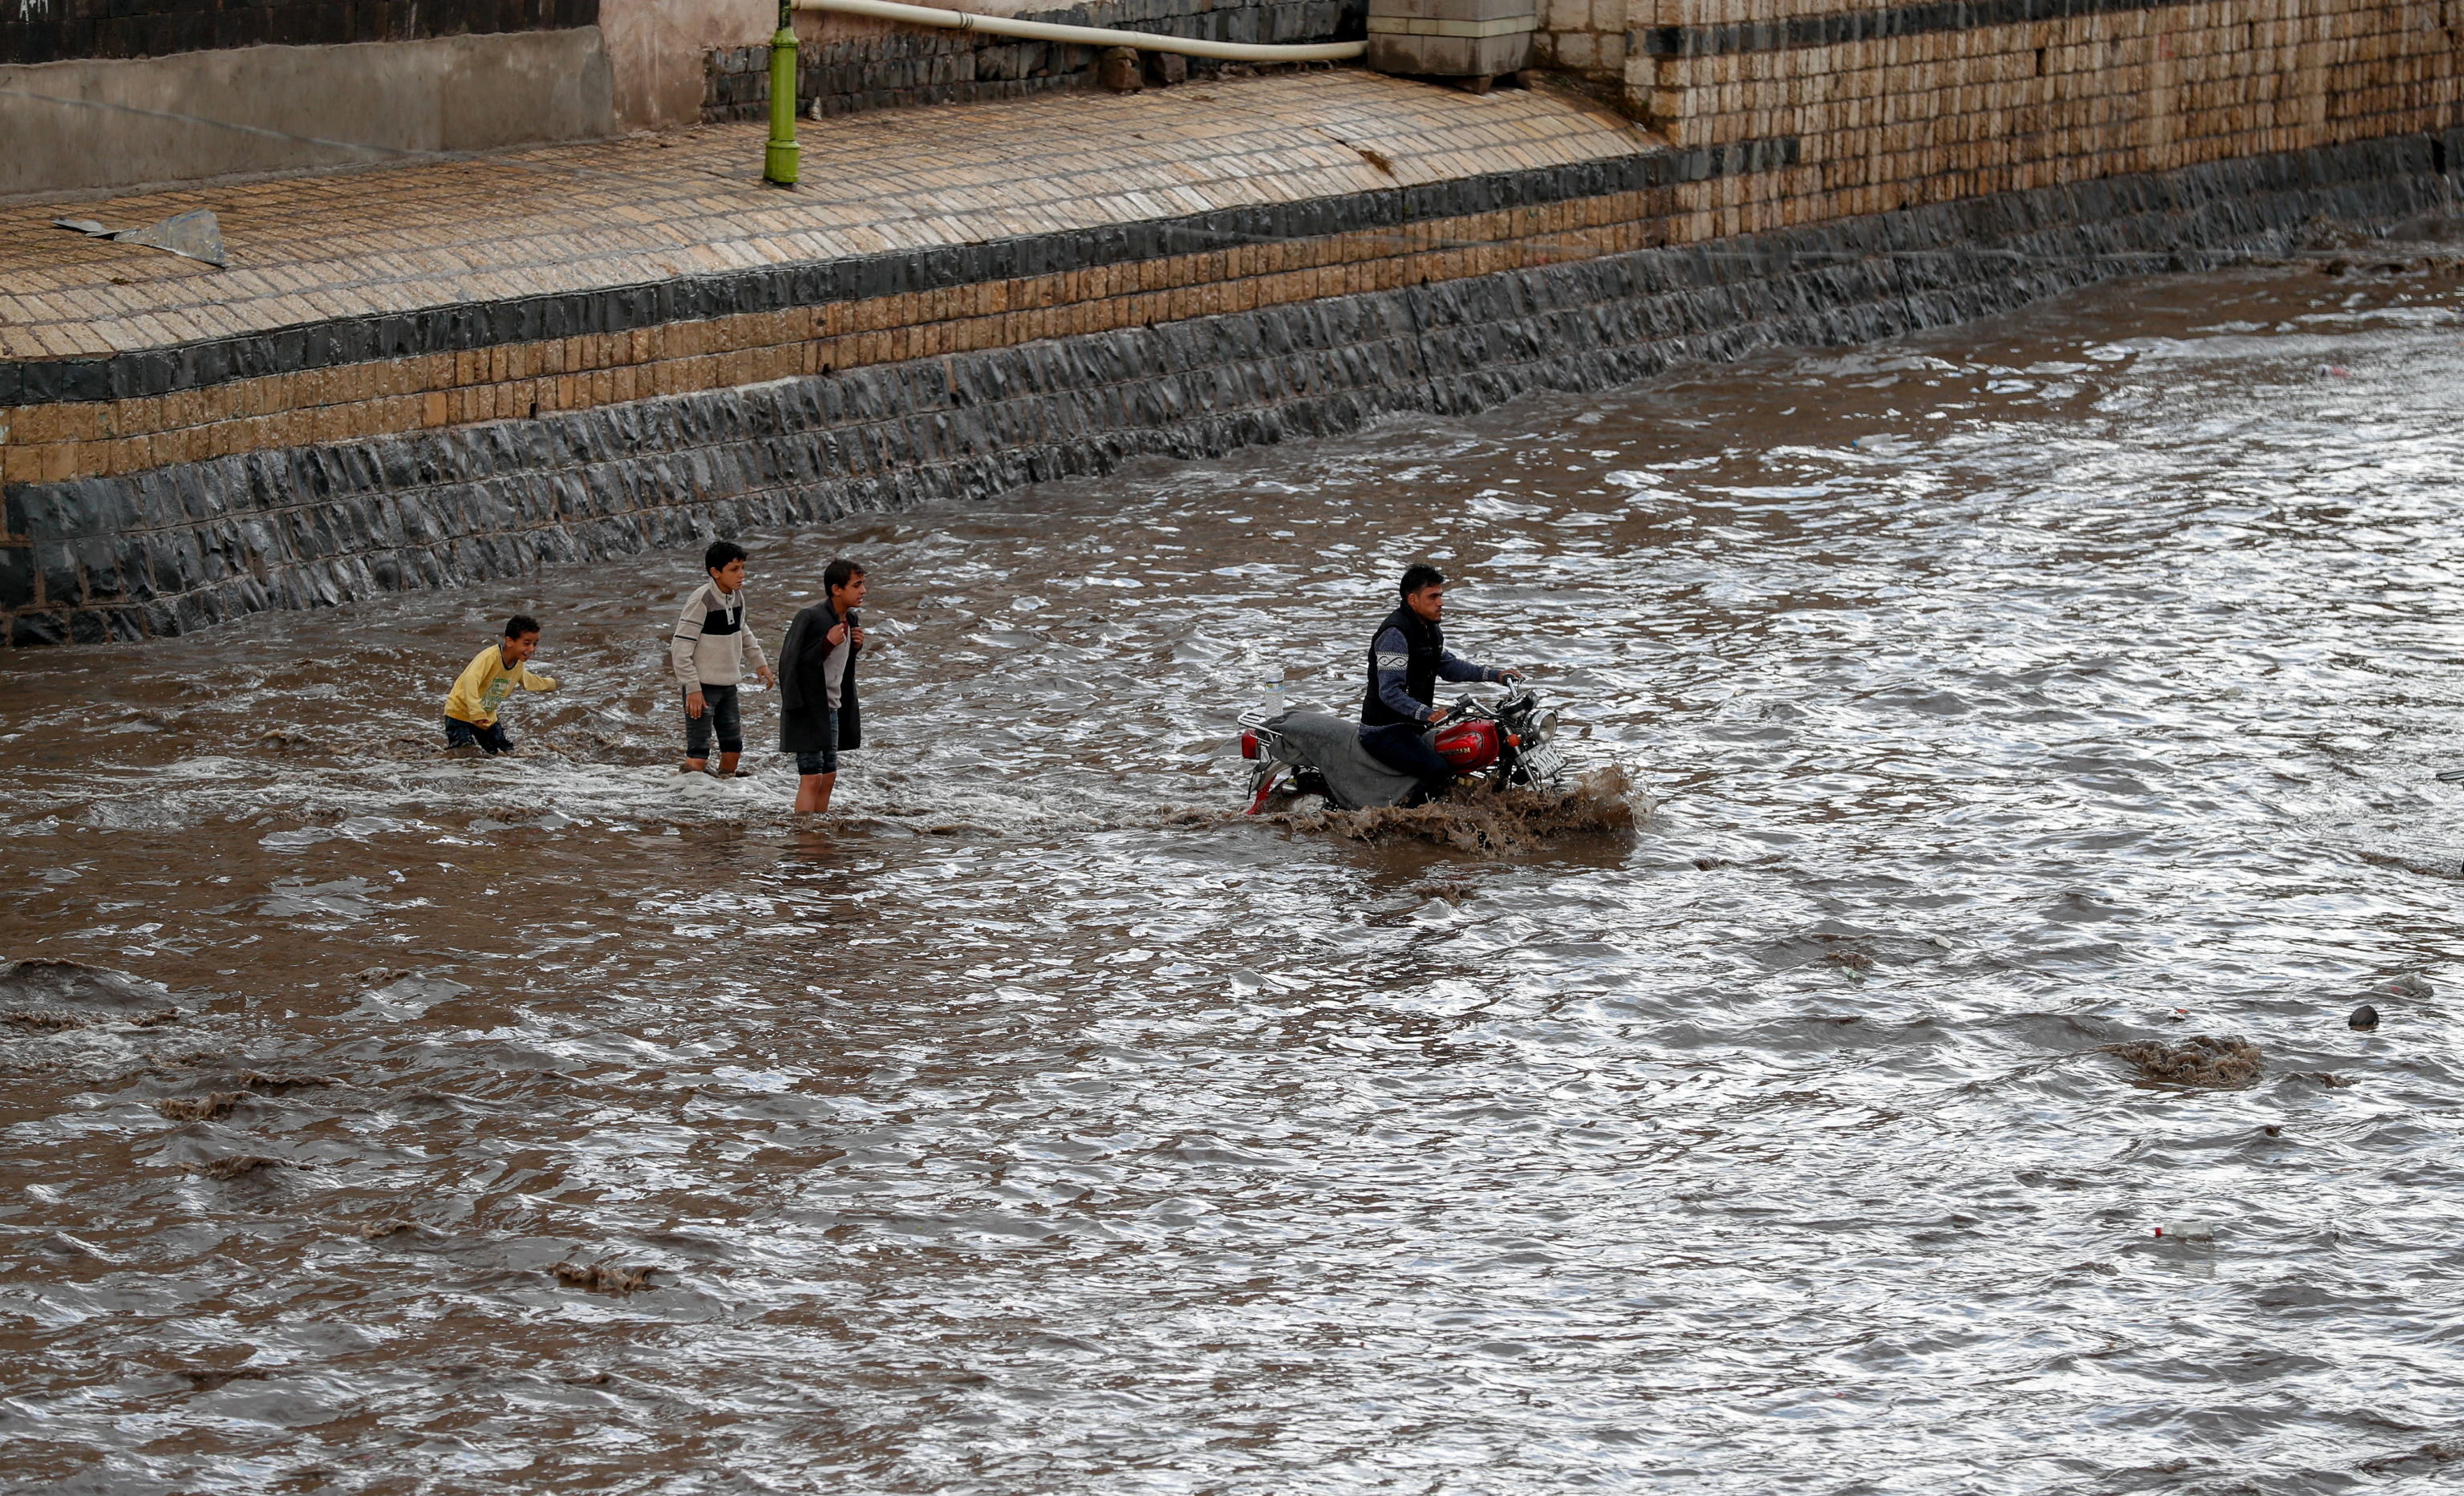 Le famiglie non si arrendono alla forza dell'acqua e tentano di attraversare gli immensi corsi d'acqua anche a bordo di motociclette